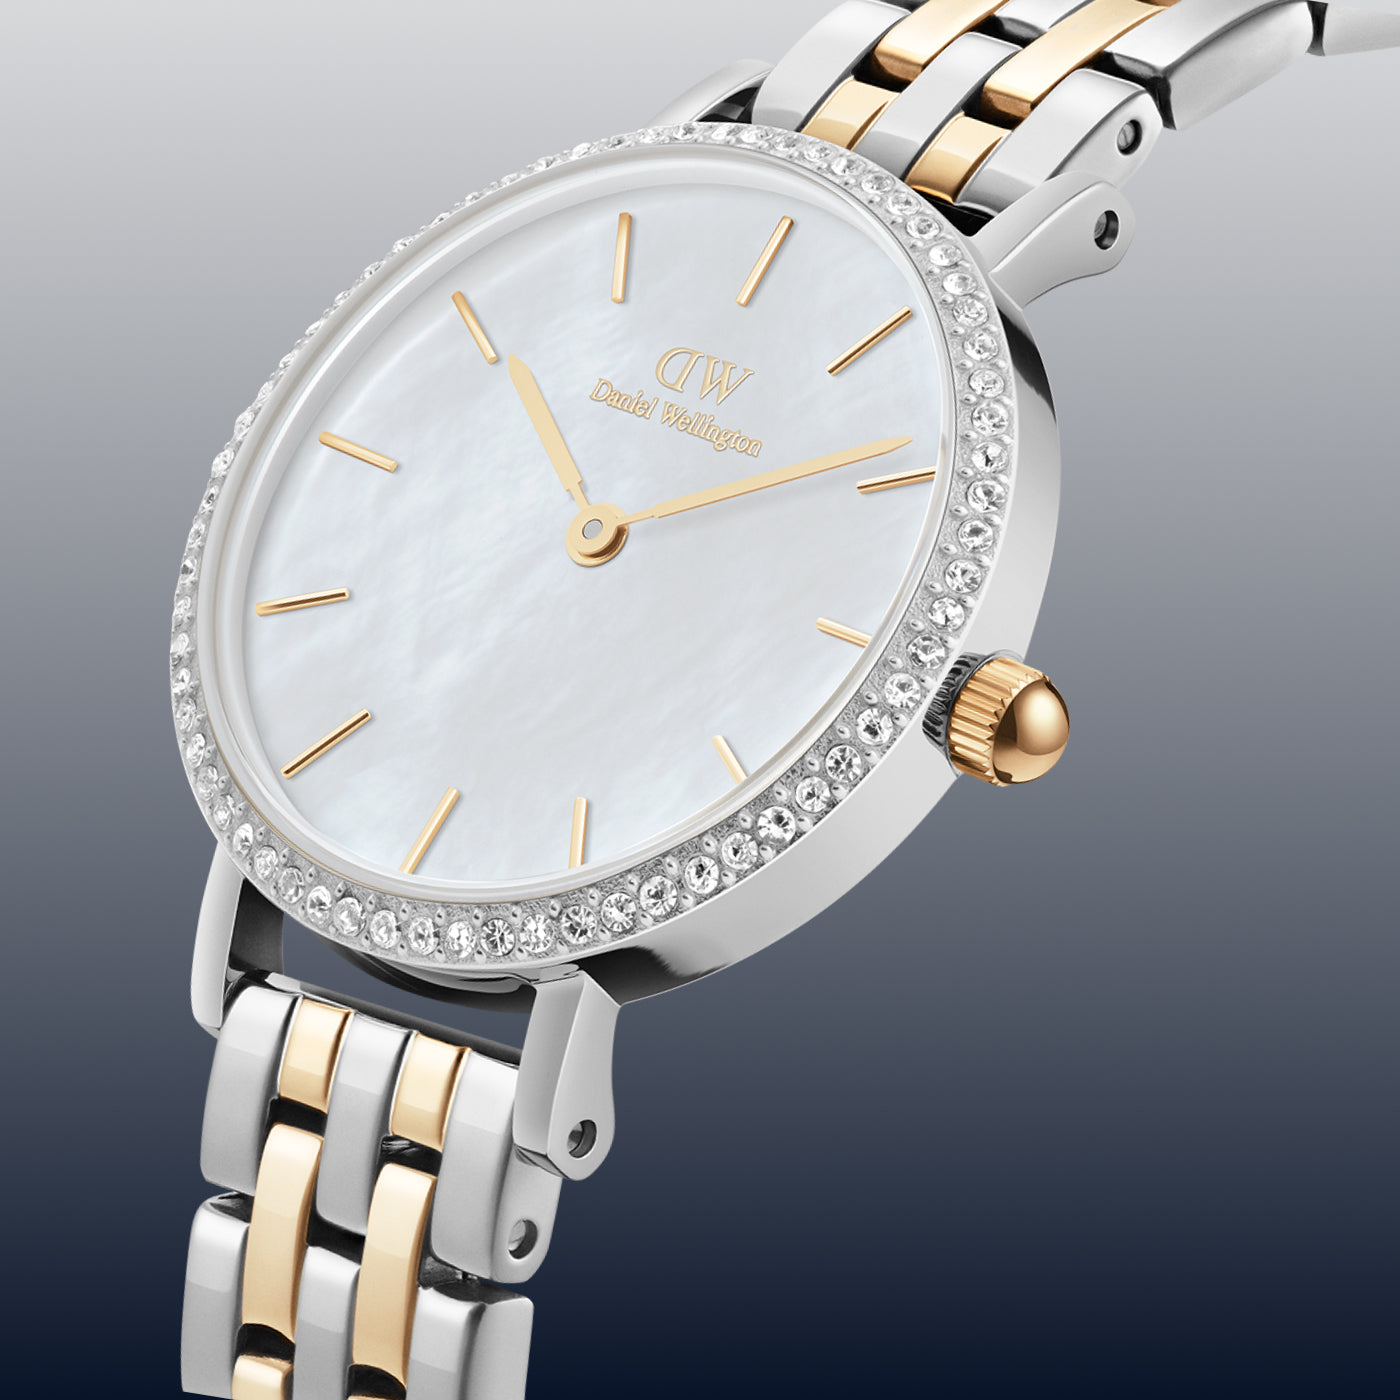 Quadro Unitone - Gold square watch for women | DW